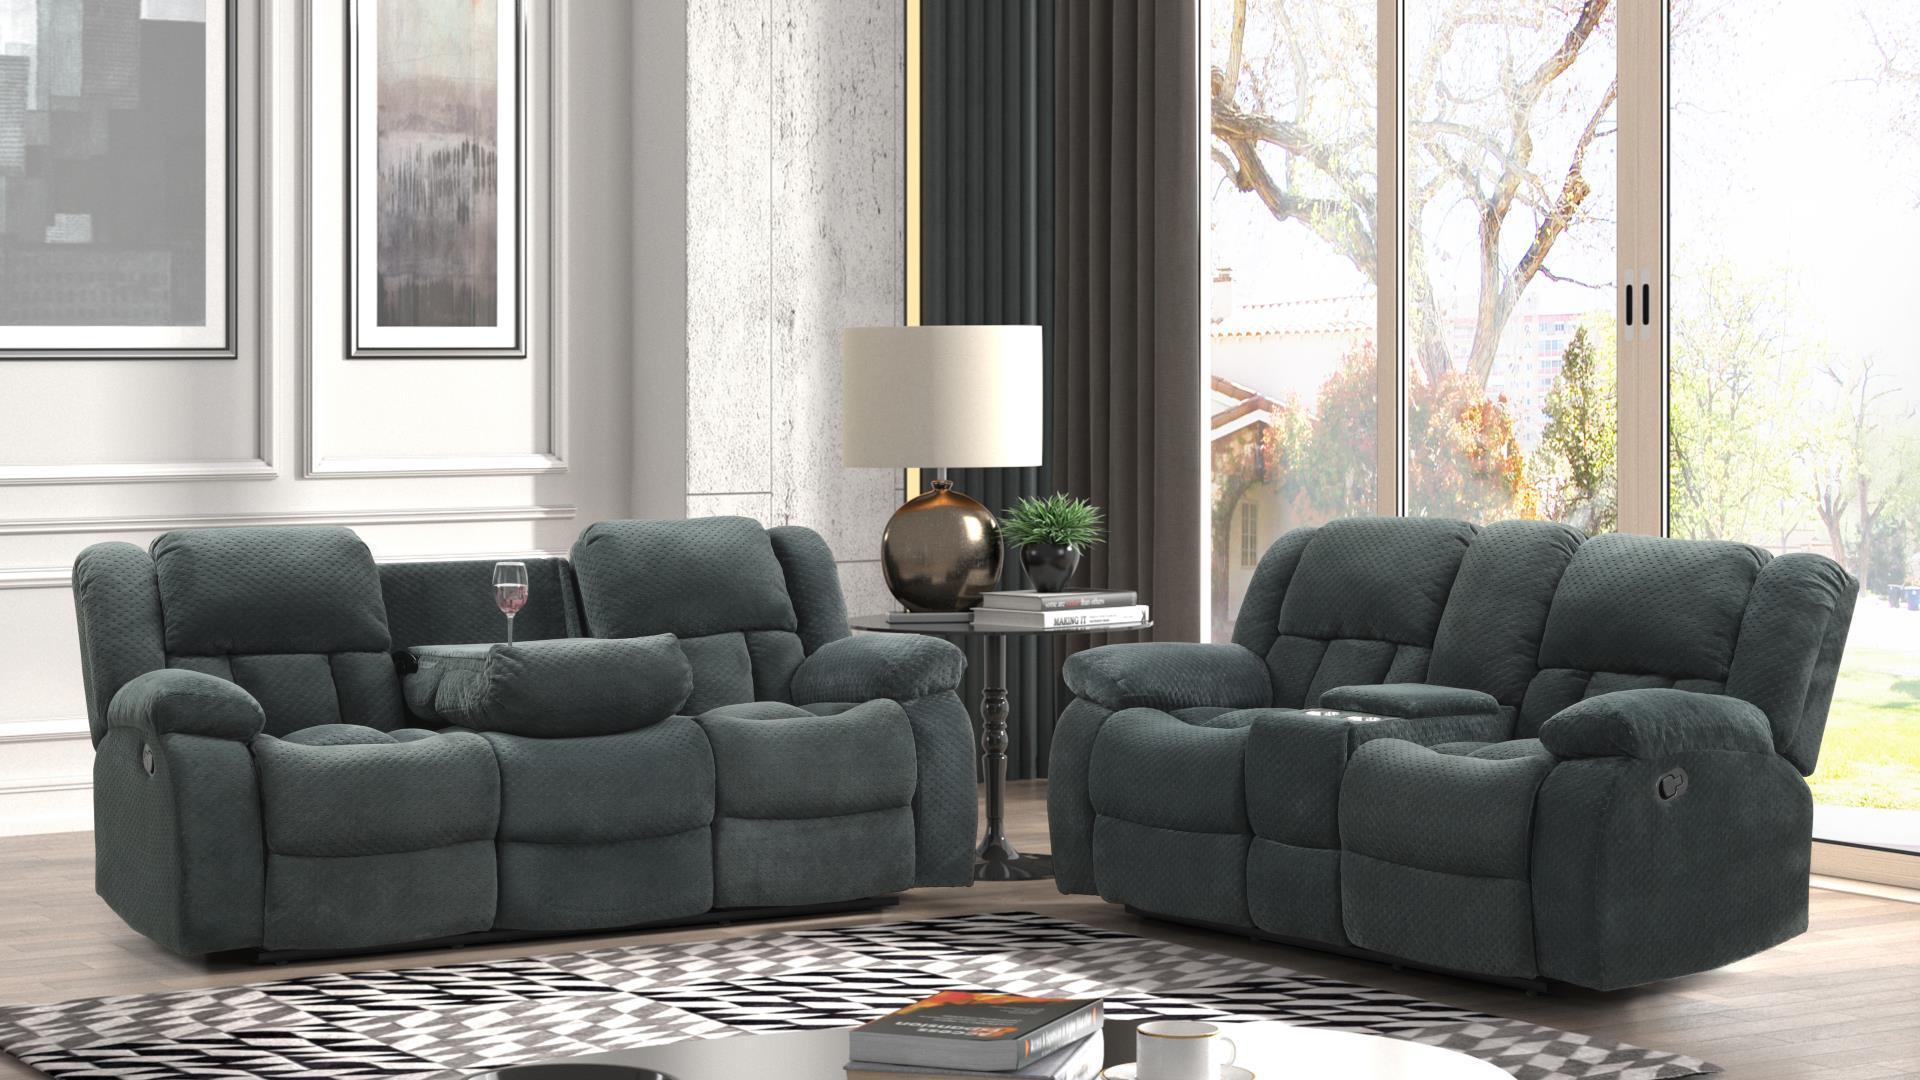 Galaxy Home Furniture ARMADA Green Recliner Sofa Set